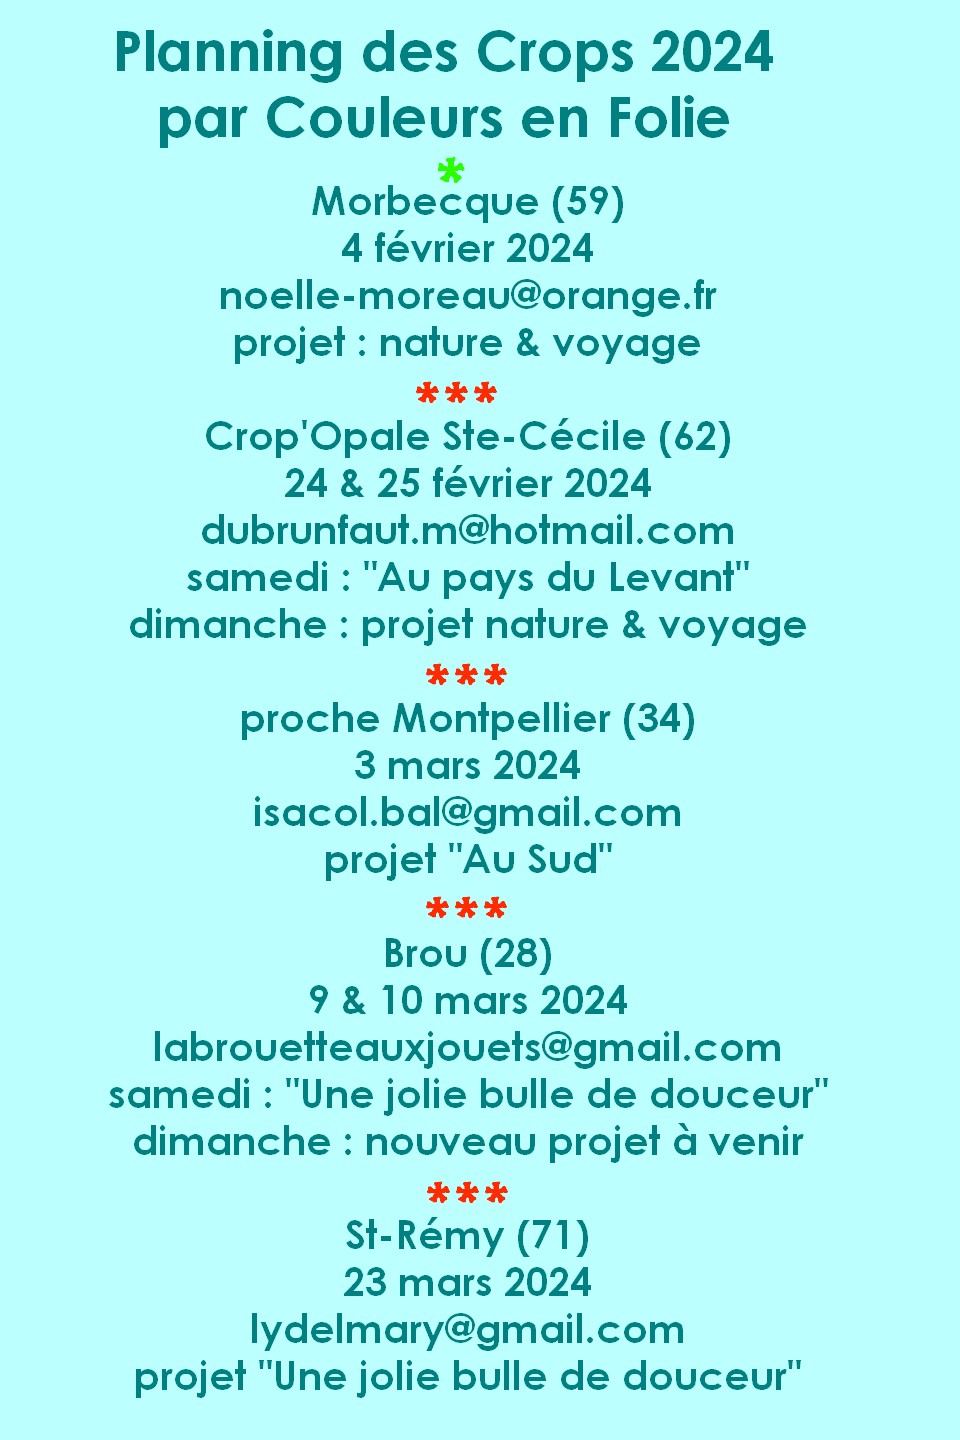 Planning des crops 2024 Couleurs-en-folie Isabelle-Lafolie ateliers scrapbooking scrap mini-albums scrapaddict tampons encres stamps diy